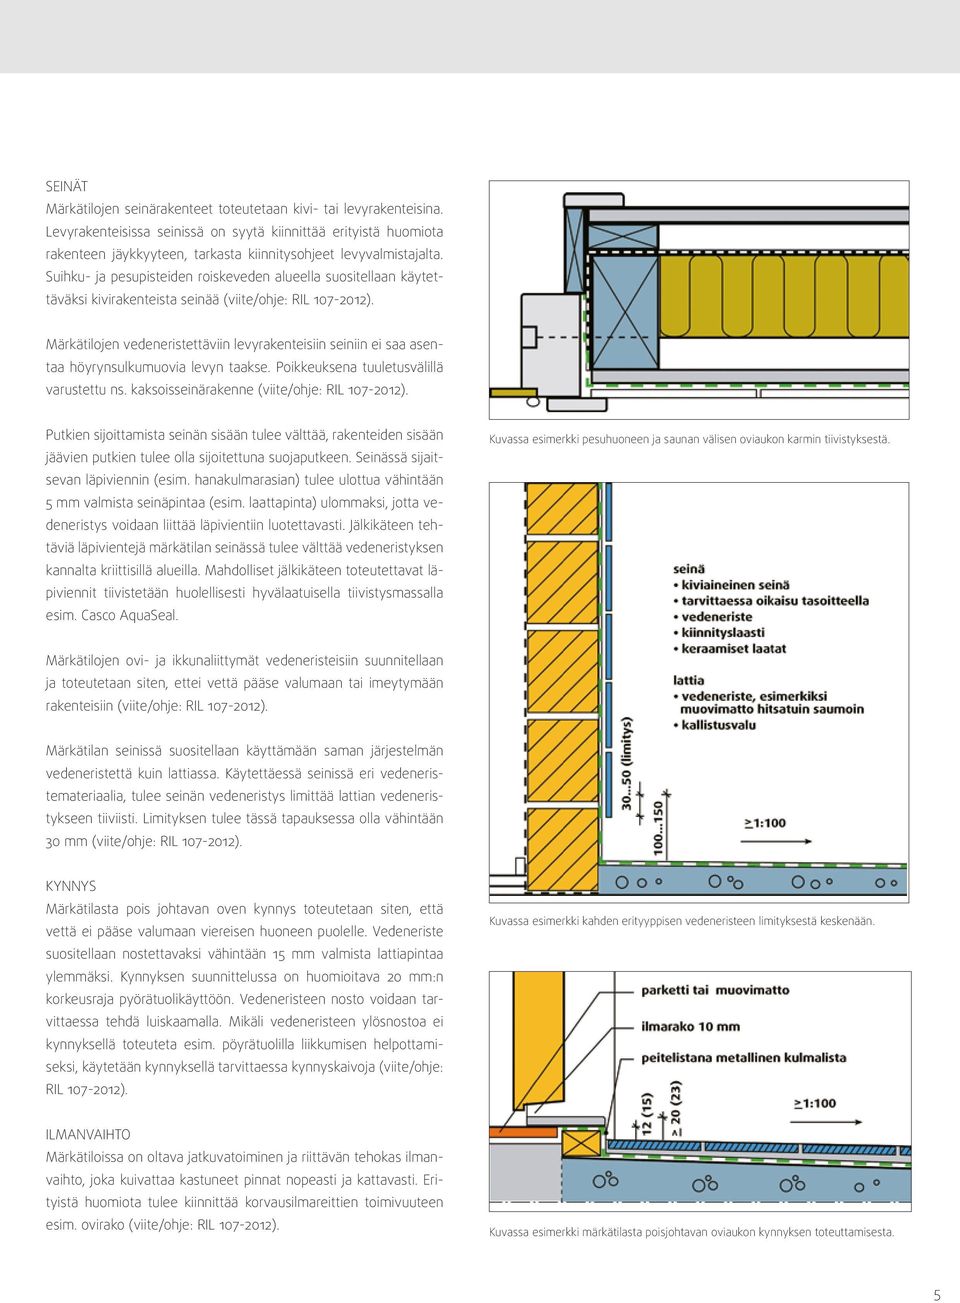 Suihku- ja pesupisteiden roiskeveden alueella suositellaan käytettäväksi kivirakenteista seinää (viite/ohje: RIL 107-2012).